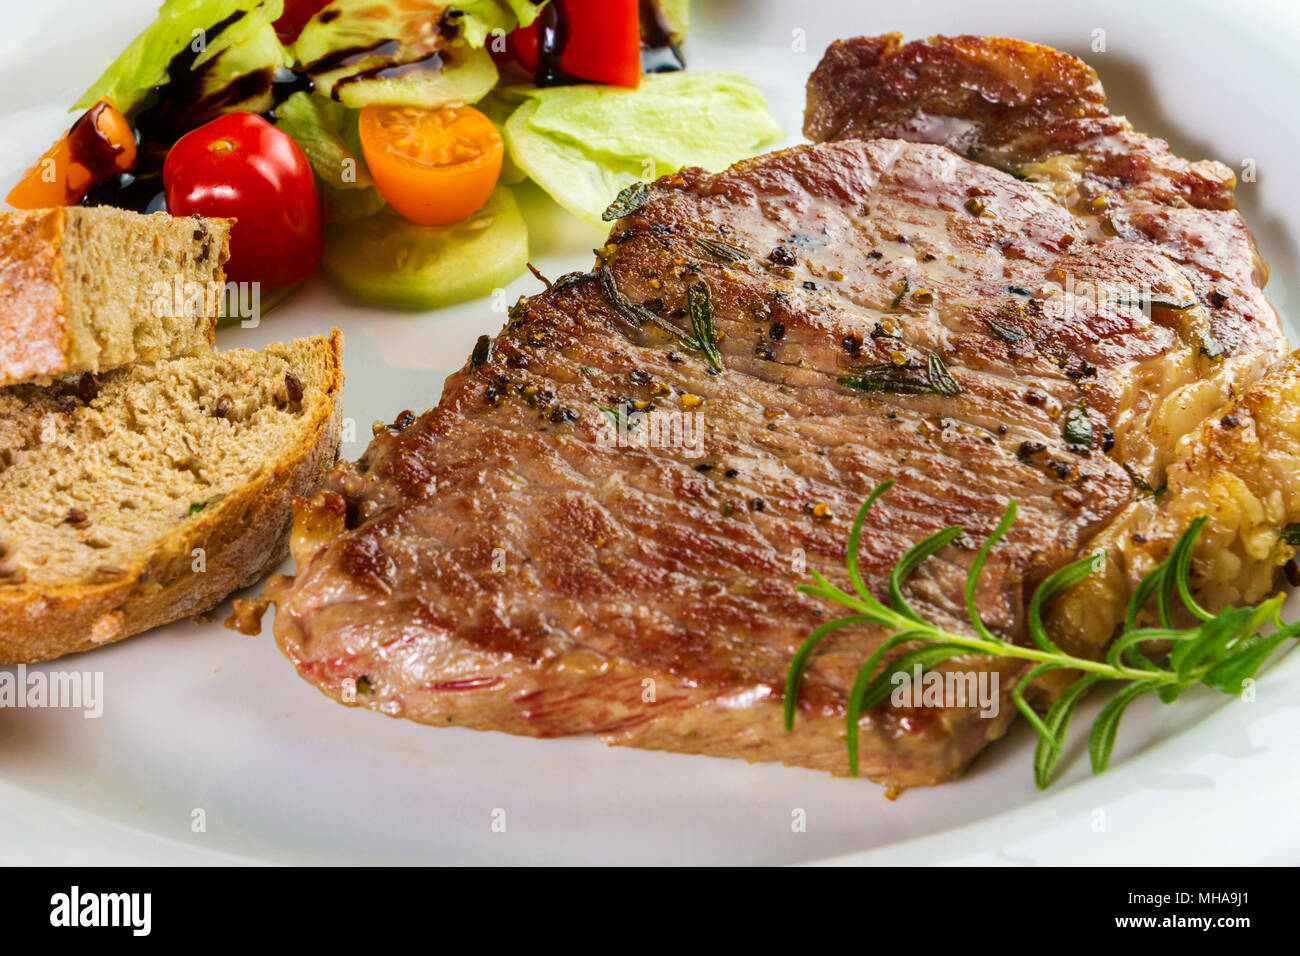 Croupe de boeuf assaisonné mûries ou faux filet steak cuit sur plaque blanche avec de la salade et du pain fait maison Banque D'Images